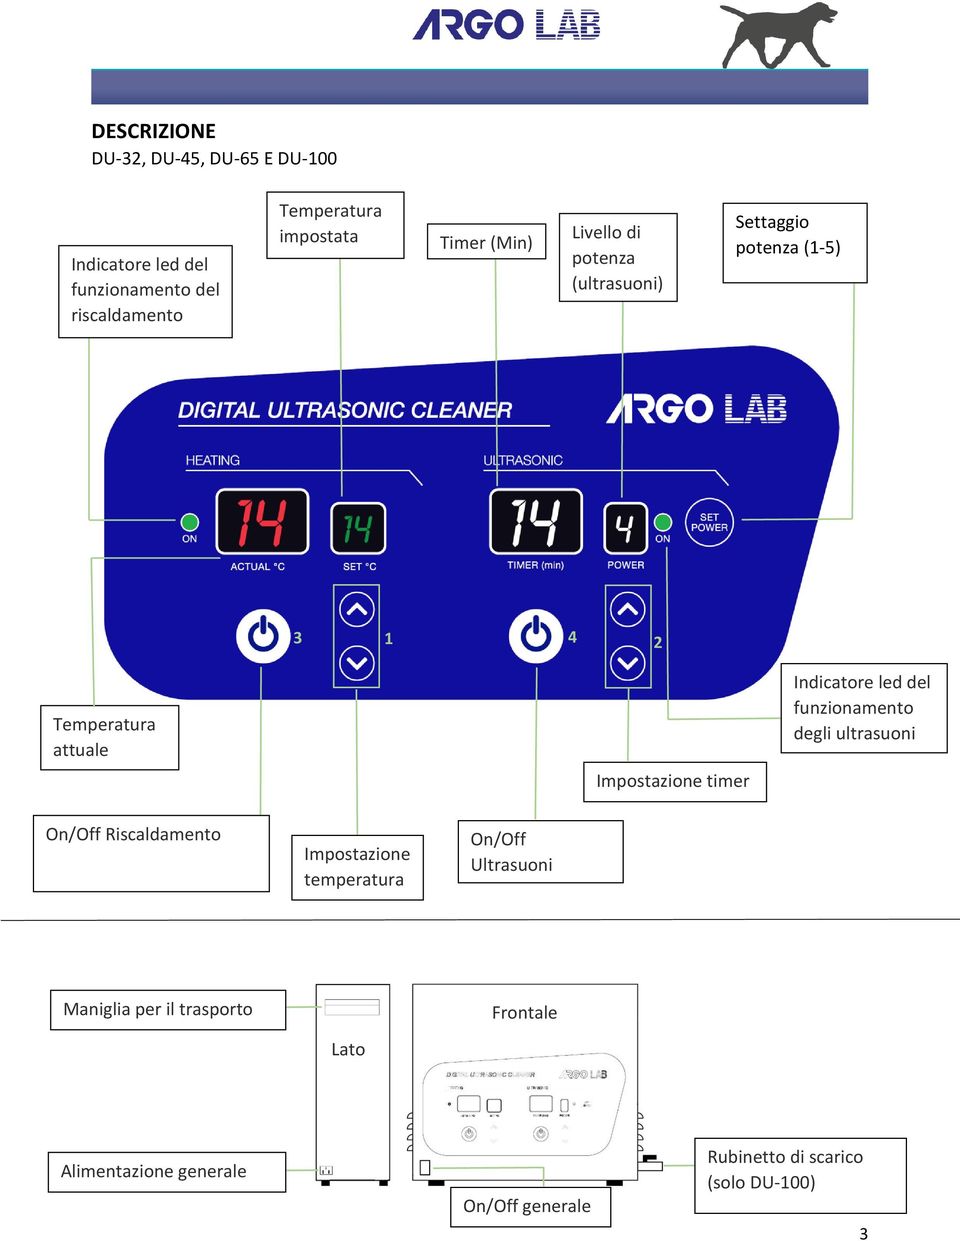 Indicatore led del funzionamento degli ultrasuoni On/Off Riscaldamento Impostazione temperatura On/Off Ultrasuoni